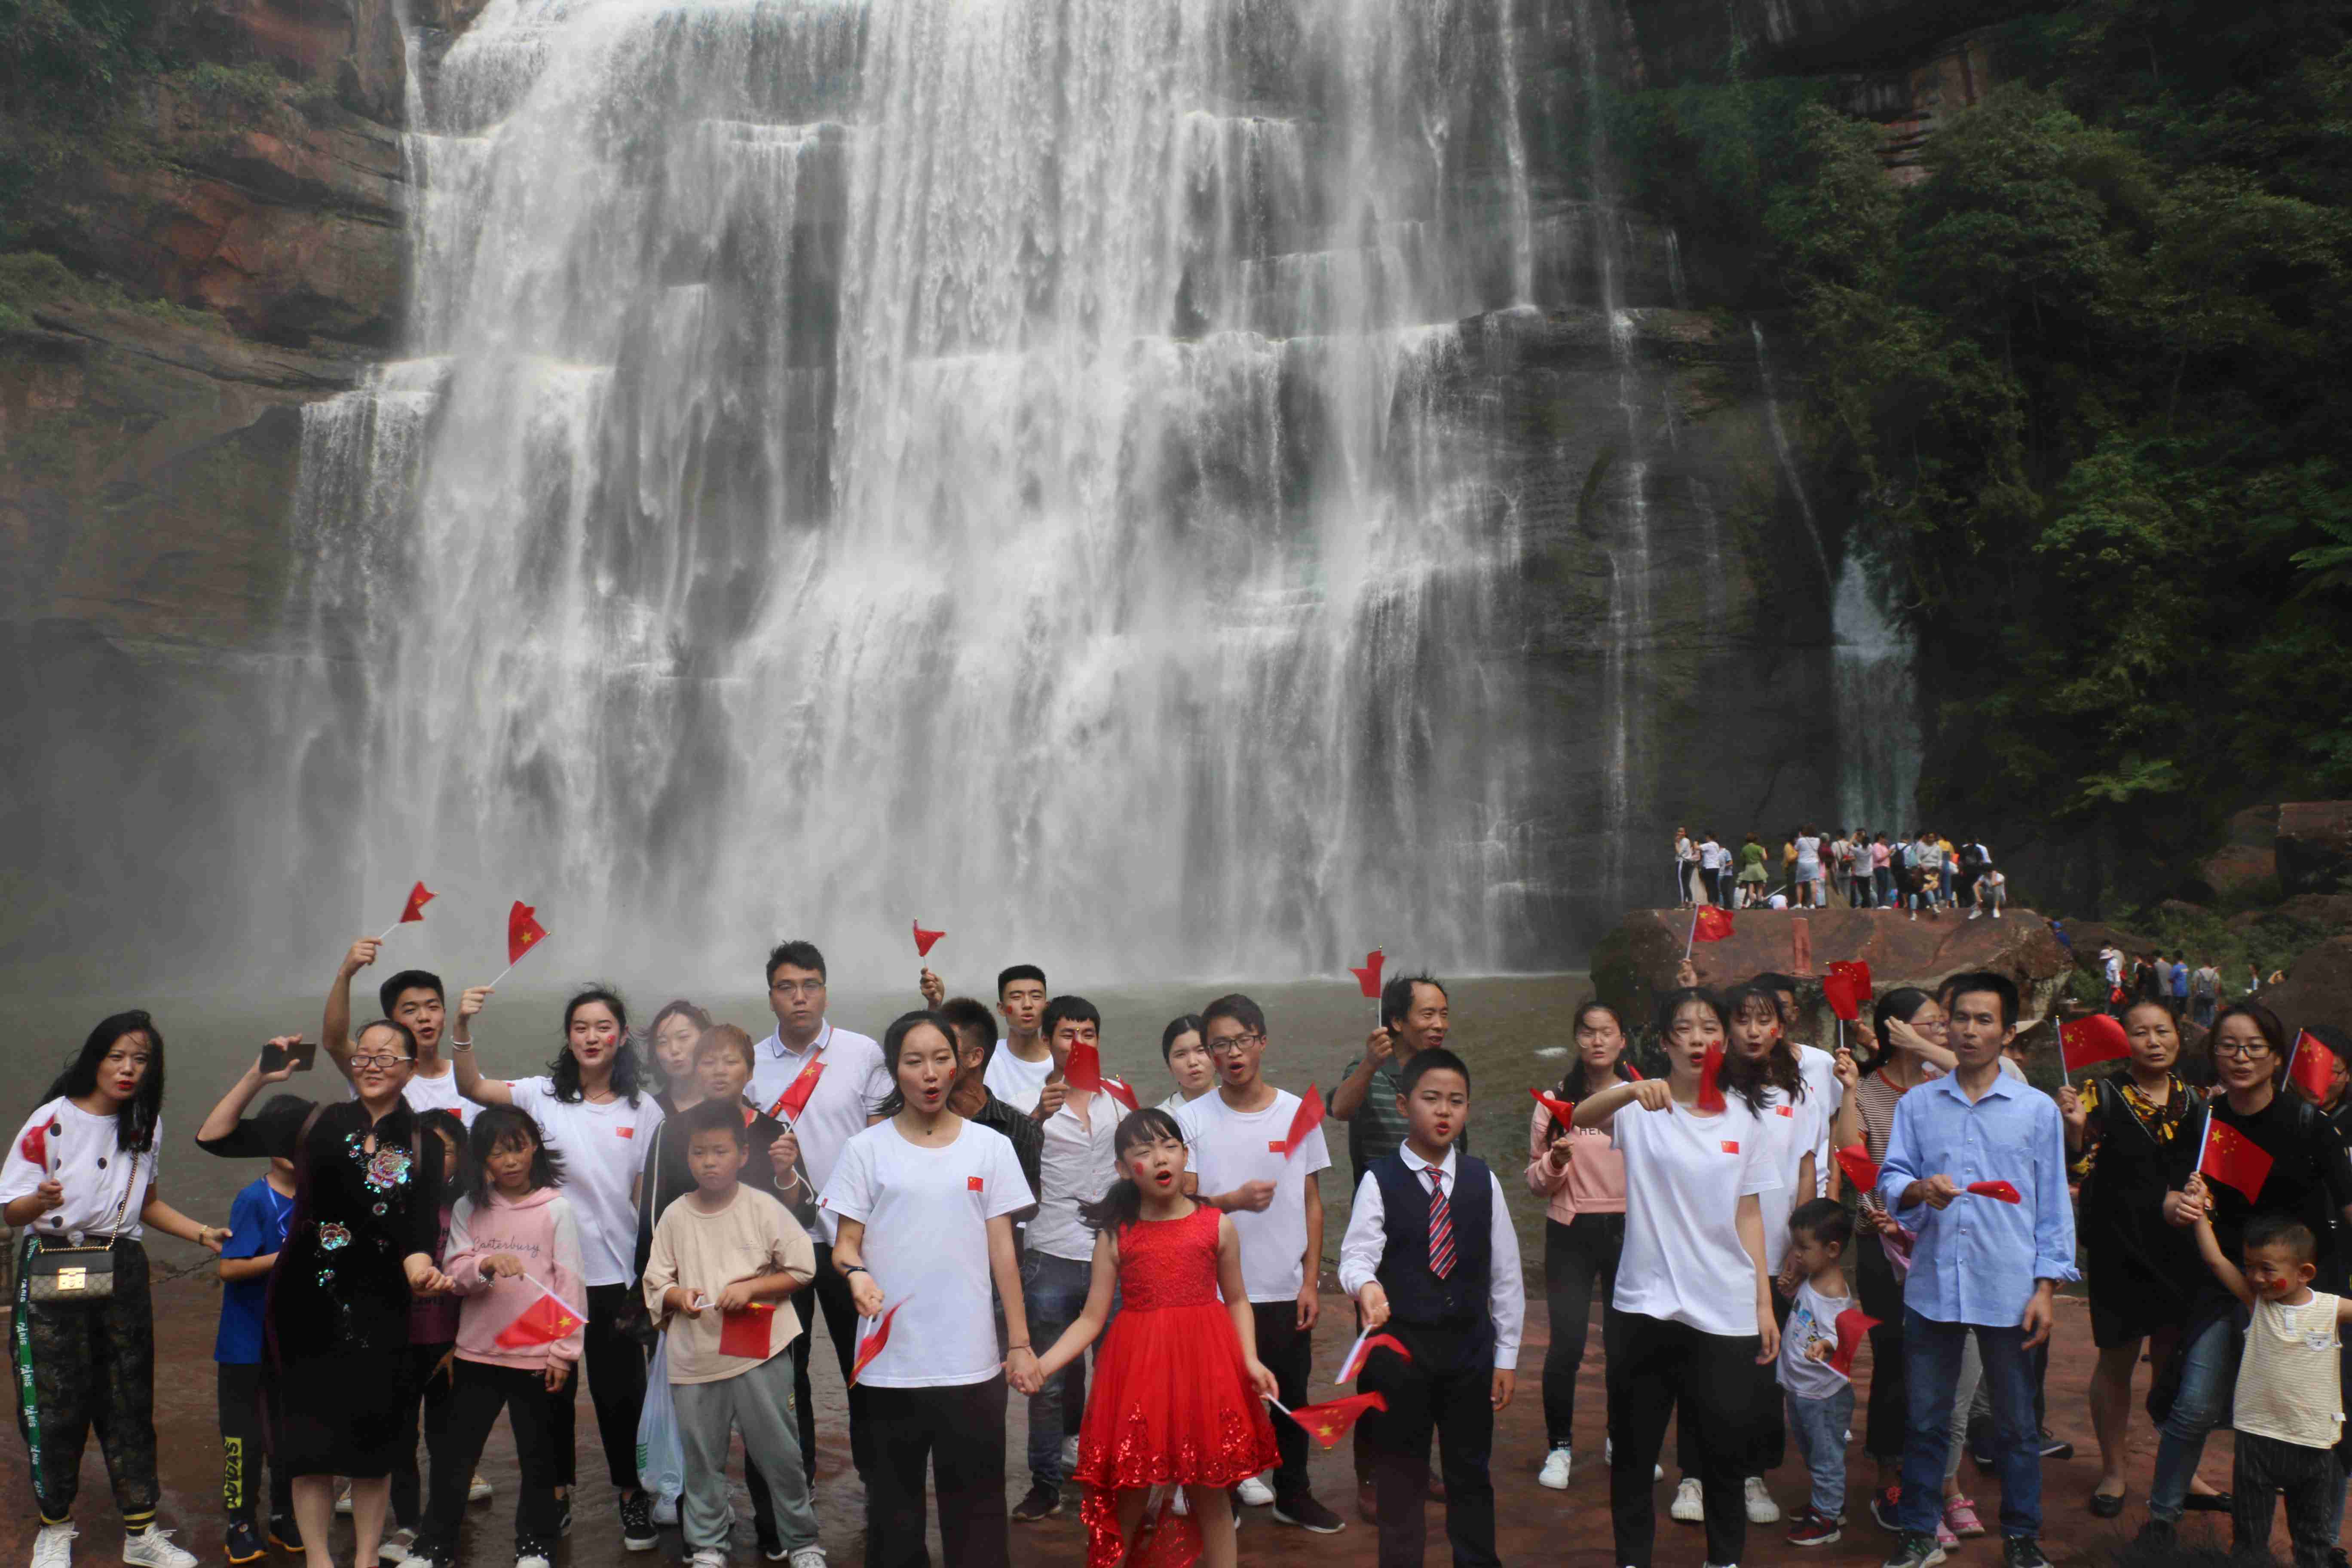 游客聚集赤水大瀑布 万人签名写祝福语向祖国告白